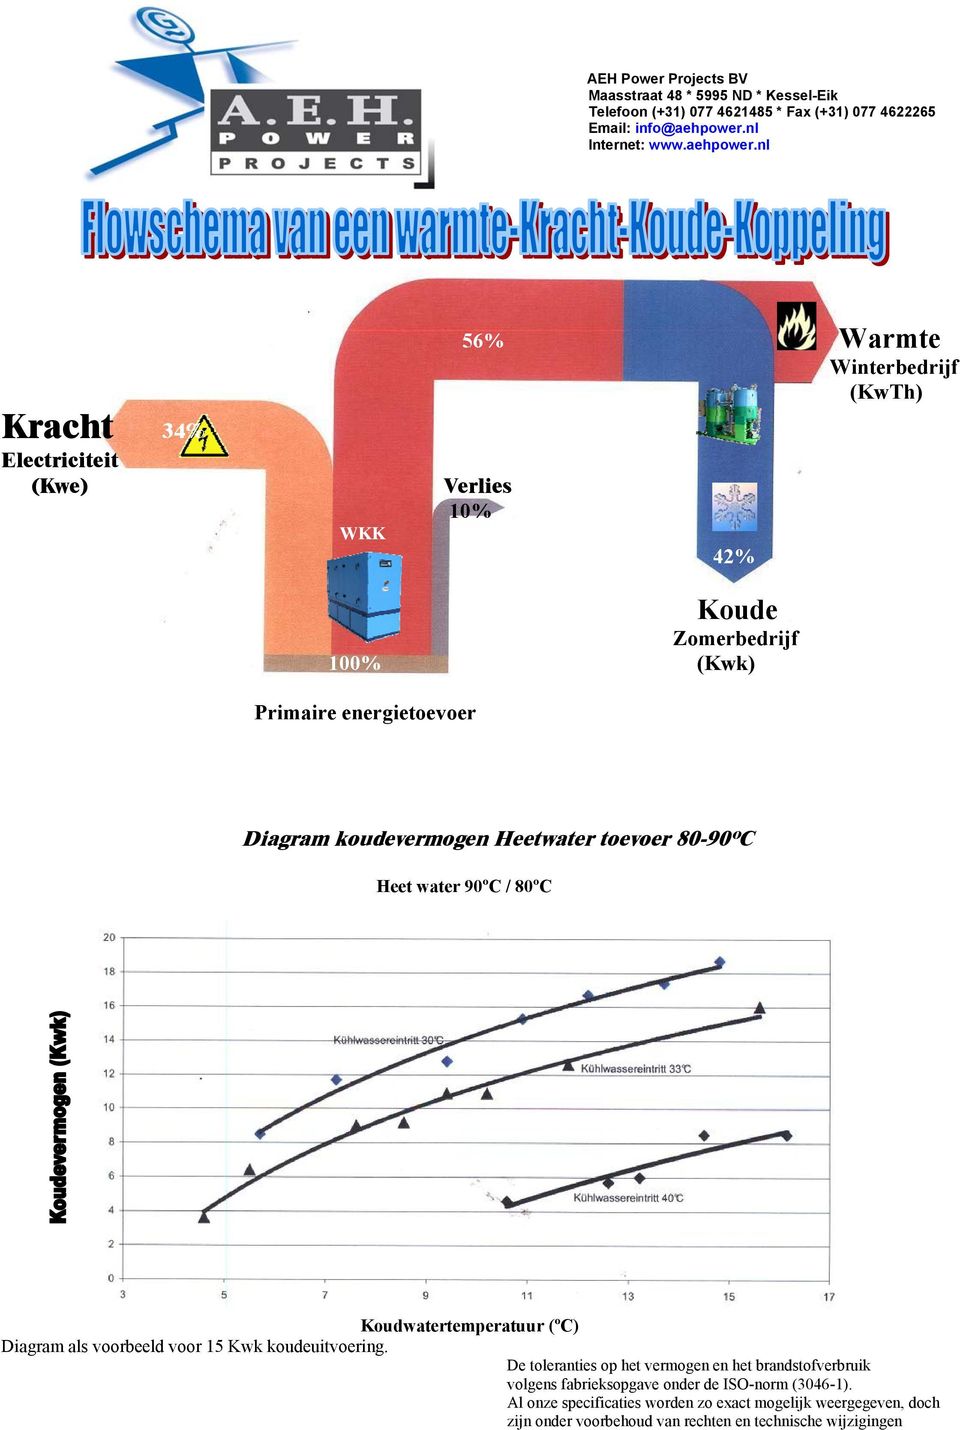 nl 56% Warmte Winterbedrijf (KwTh) Kracht 34% Electriciteit (Kwe) WKK Verlies 10% 42% Koude Zomerbedrijf 100% (Kwk) Primaire energietoevoer Diagram